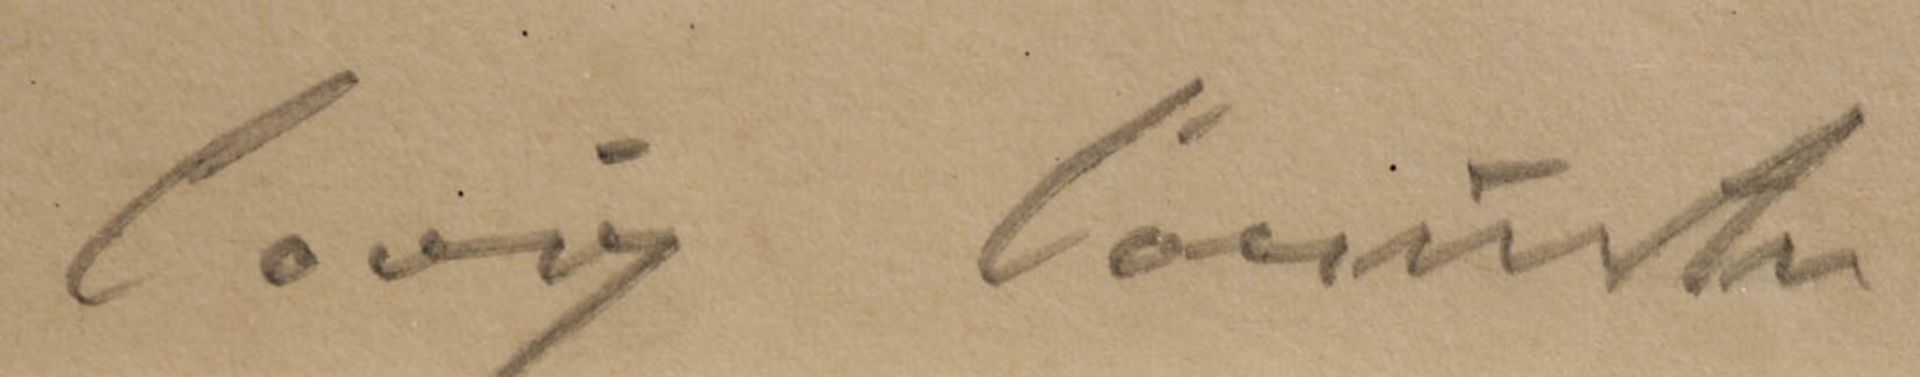 Corinth, Lovis, 1858 - 1925 Turnierreiter aus der Serie "Englisches Königshaus". Lithographie, - Bild 2 aus 2